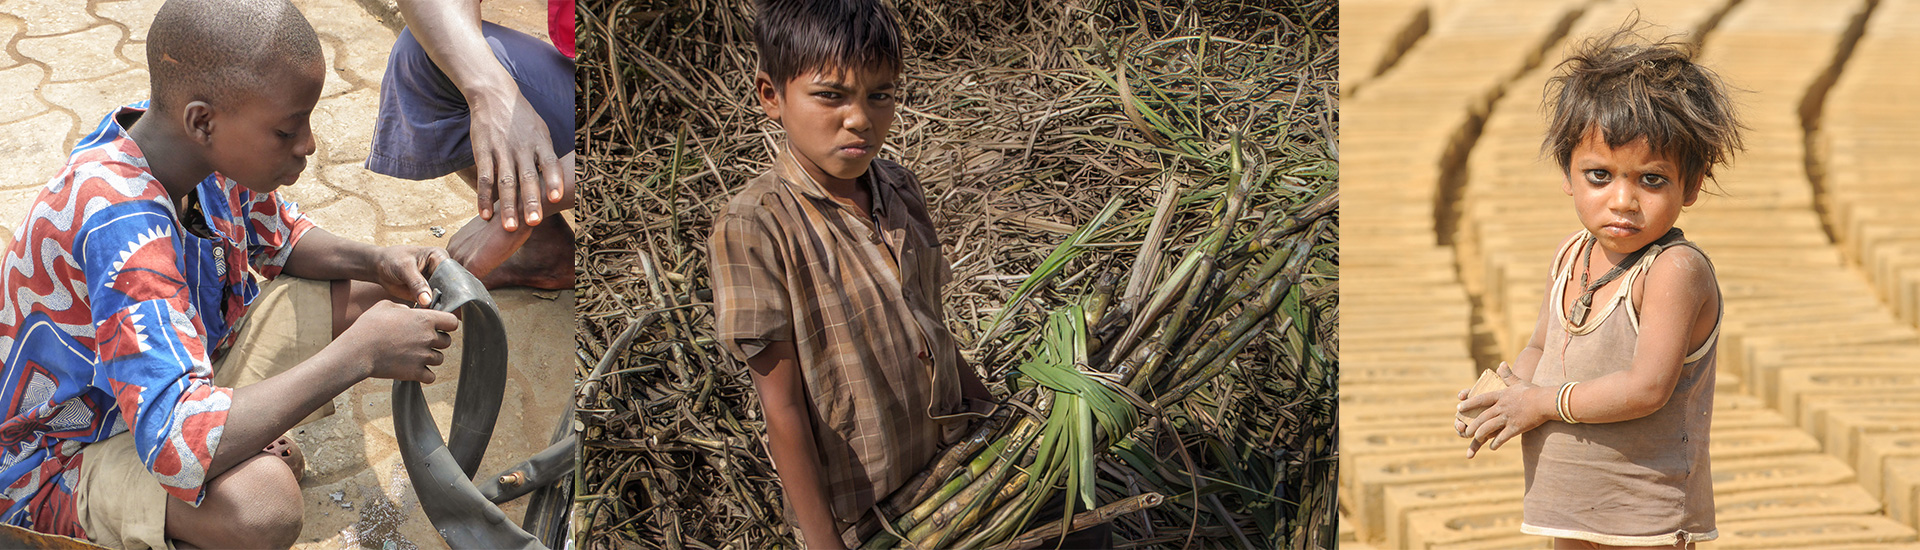 La educación, al rescate del trabajo infantil, una lacra que afecta a 160 millones de menores en el mundo